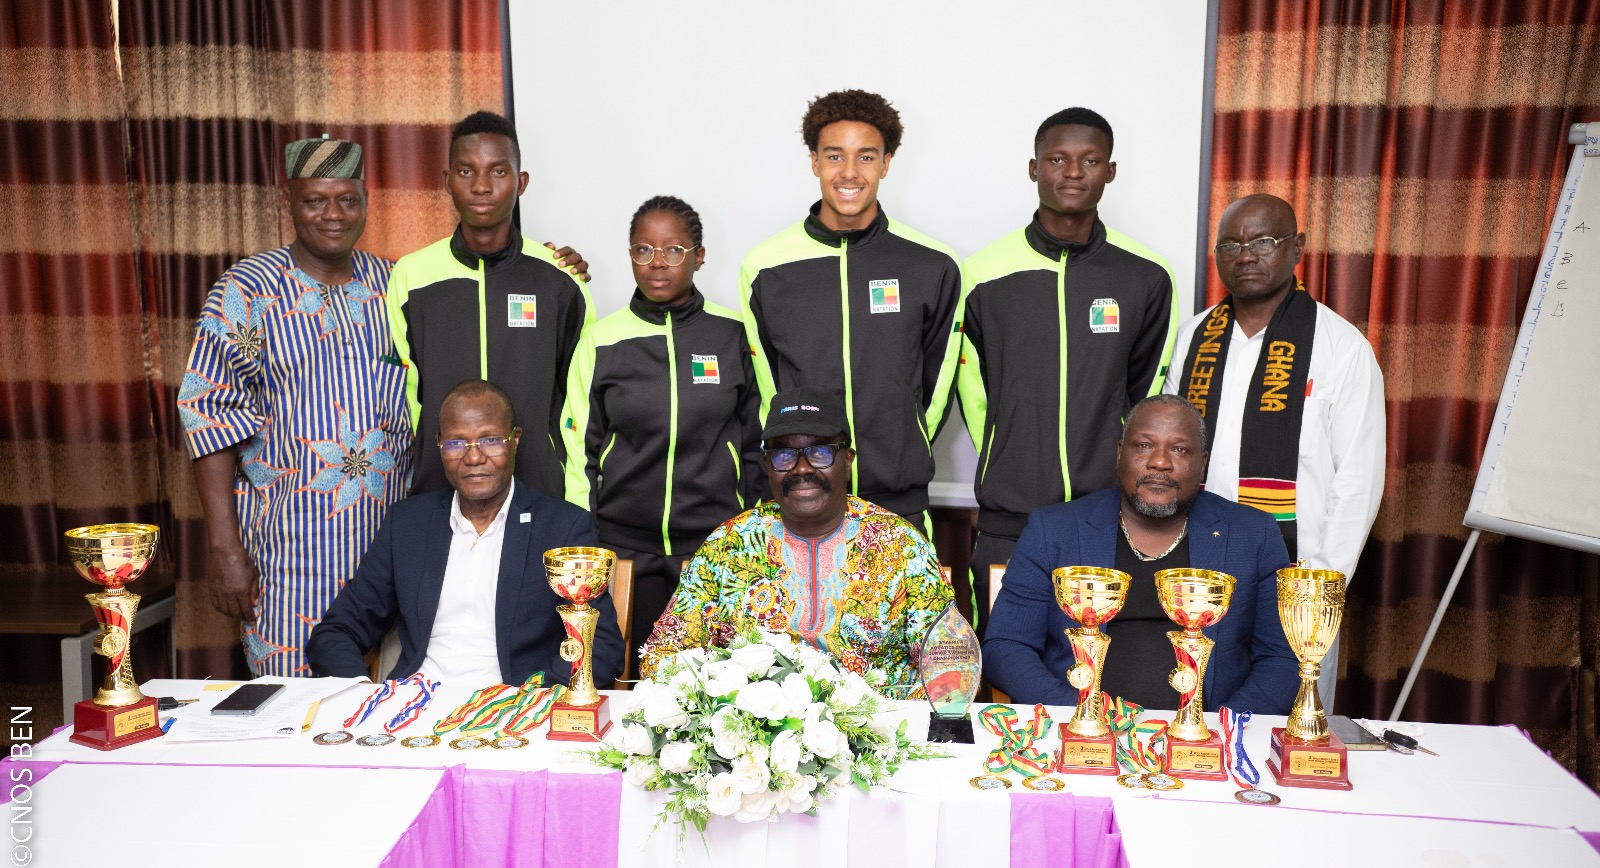 You are currently viewing Natation – 3e Championnats d’Afrique Juniors Zone 2: Les nageurs et les responsables reçoivent des félicitations de la part du président du Cnos-Ben